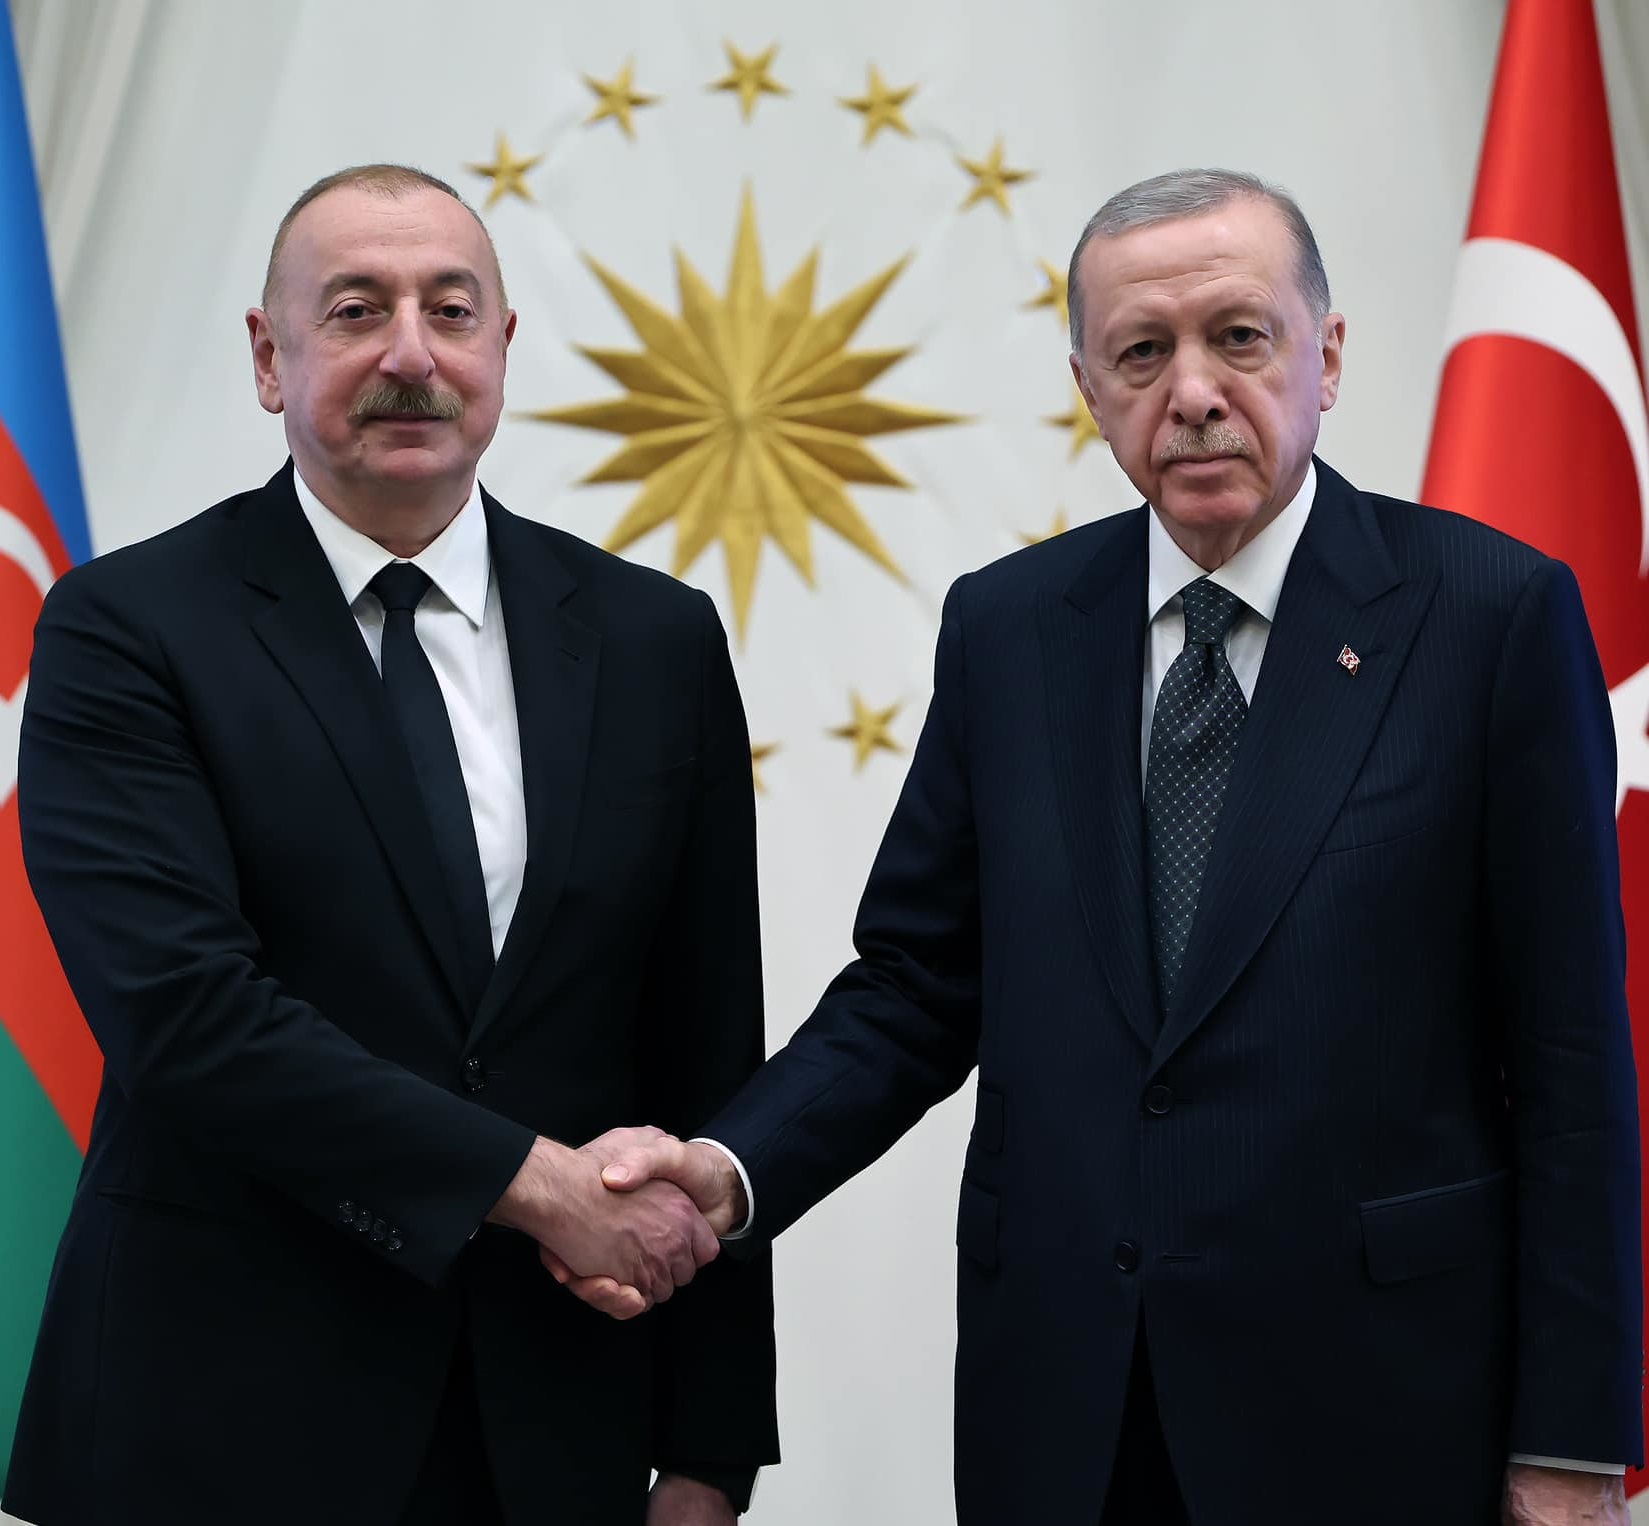 Турция открыто содействует продвижению ложного тезиса «Западный Азербайджан»